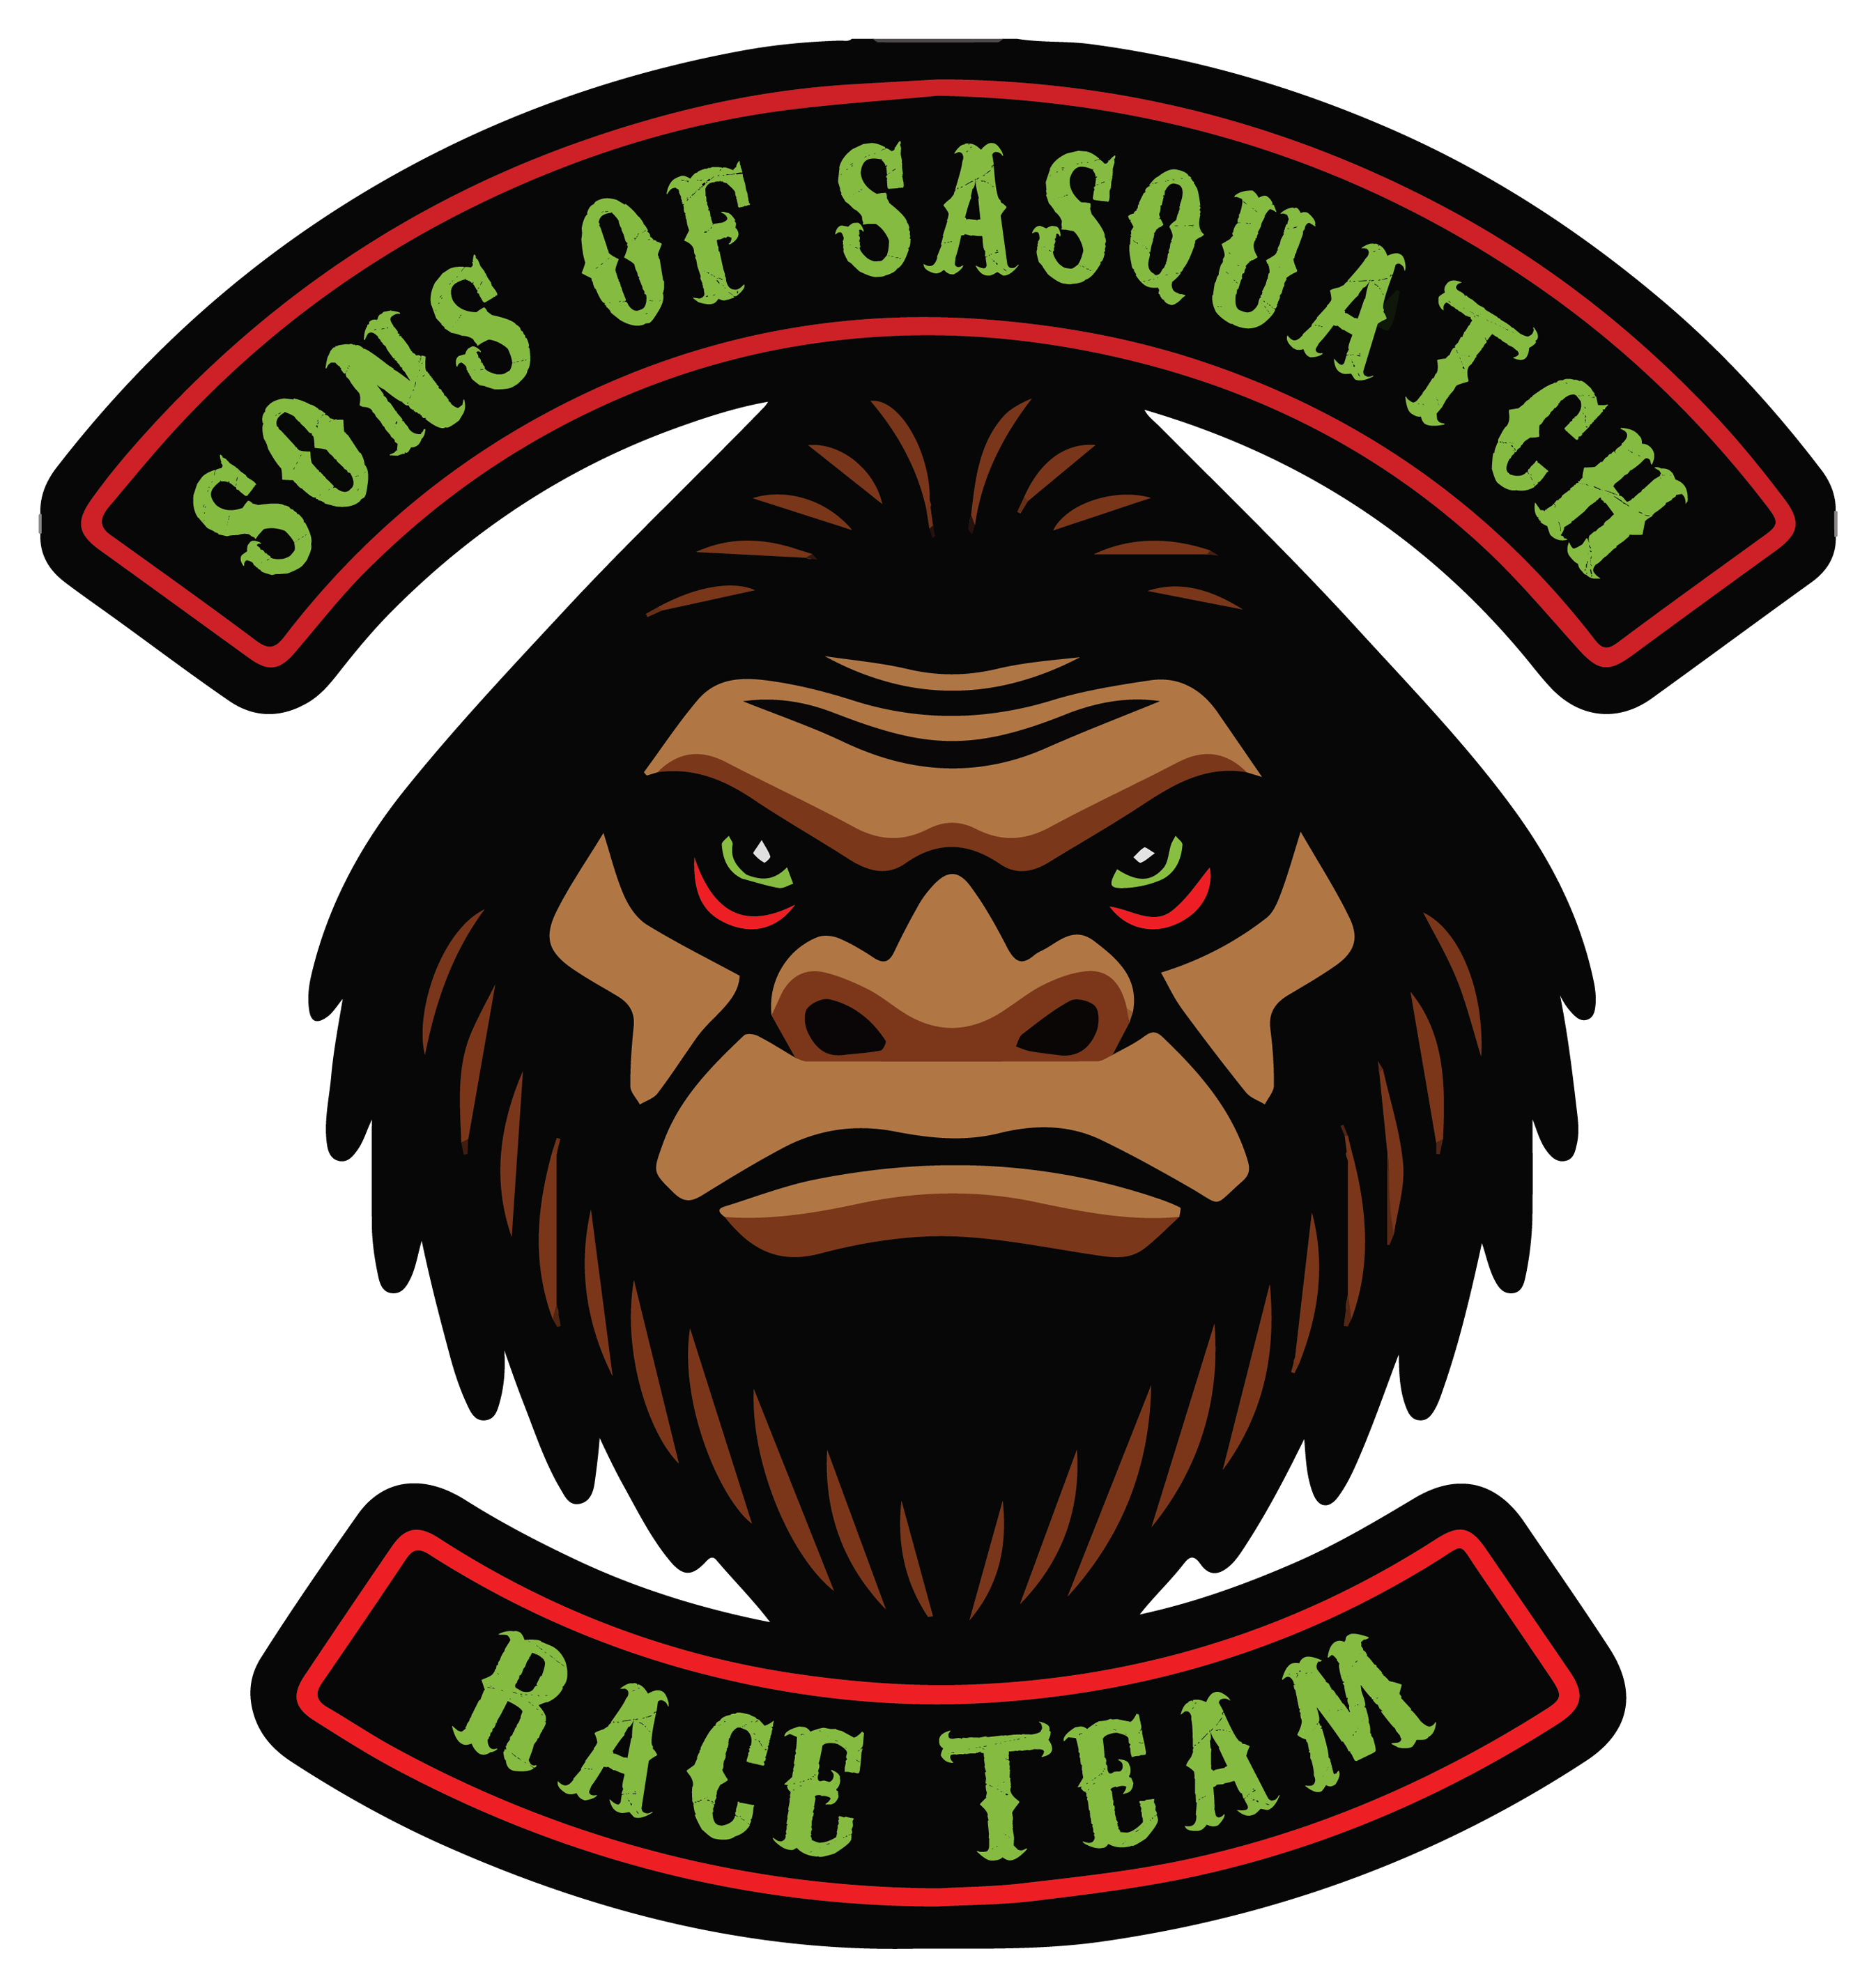 Sons of Sasquatch Race Team